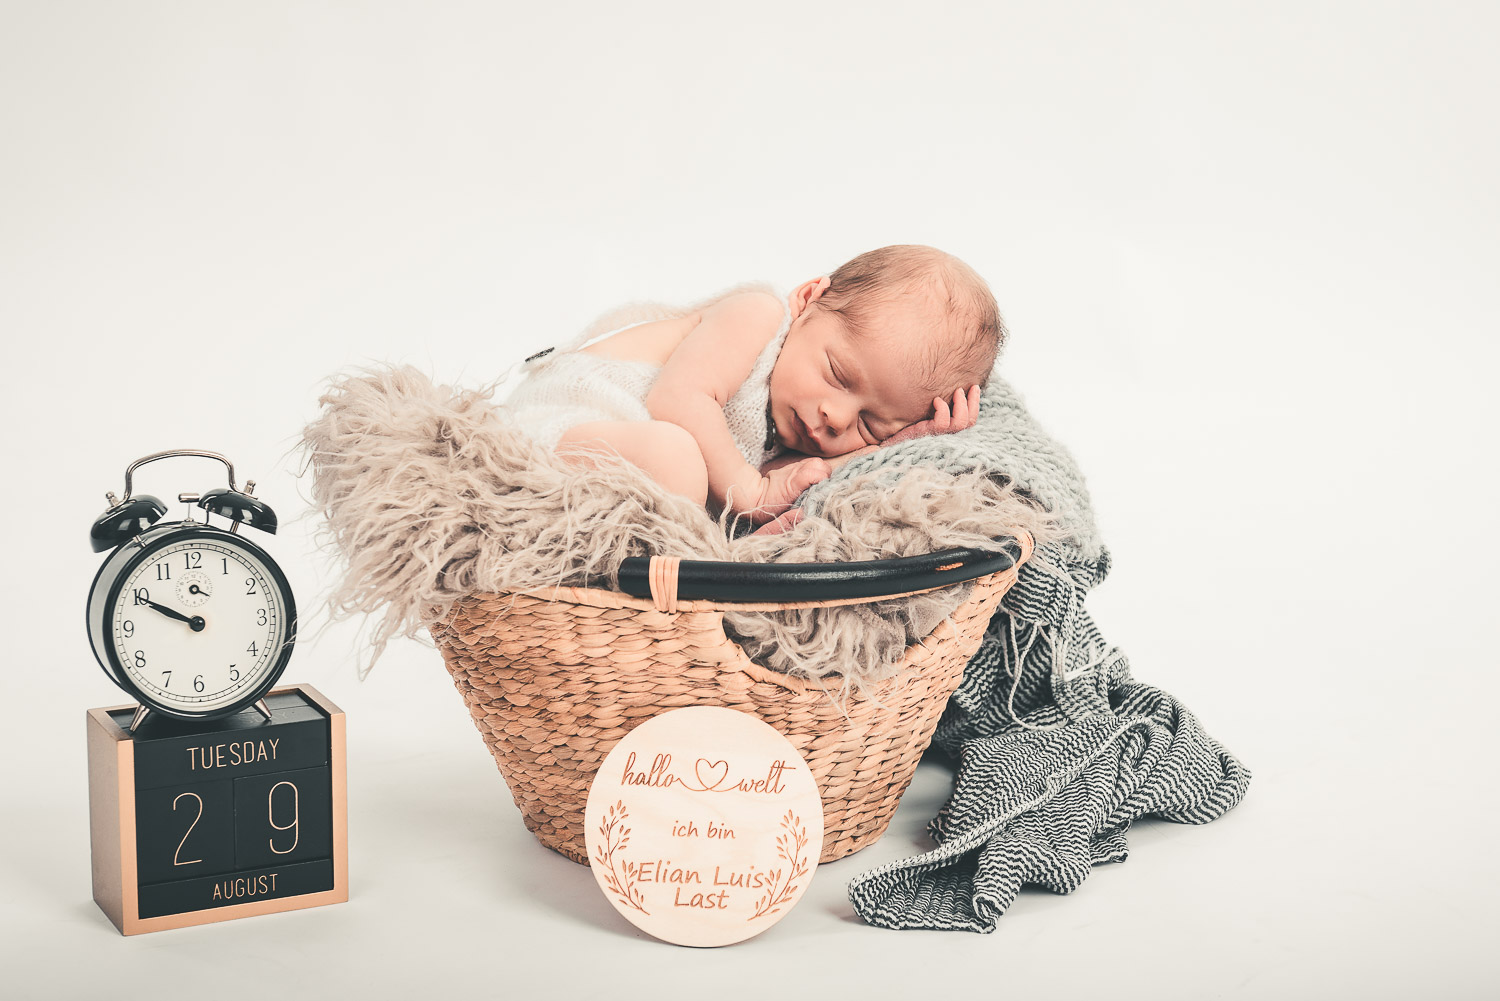 Newborn-Baby-liegt-schlafend-in-einem-Korb-mit-Deko-Wecker-und-Datums-Würfel